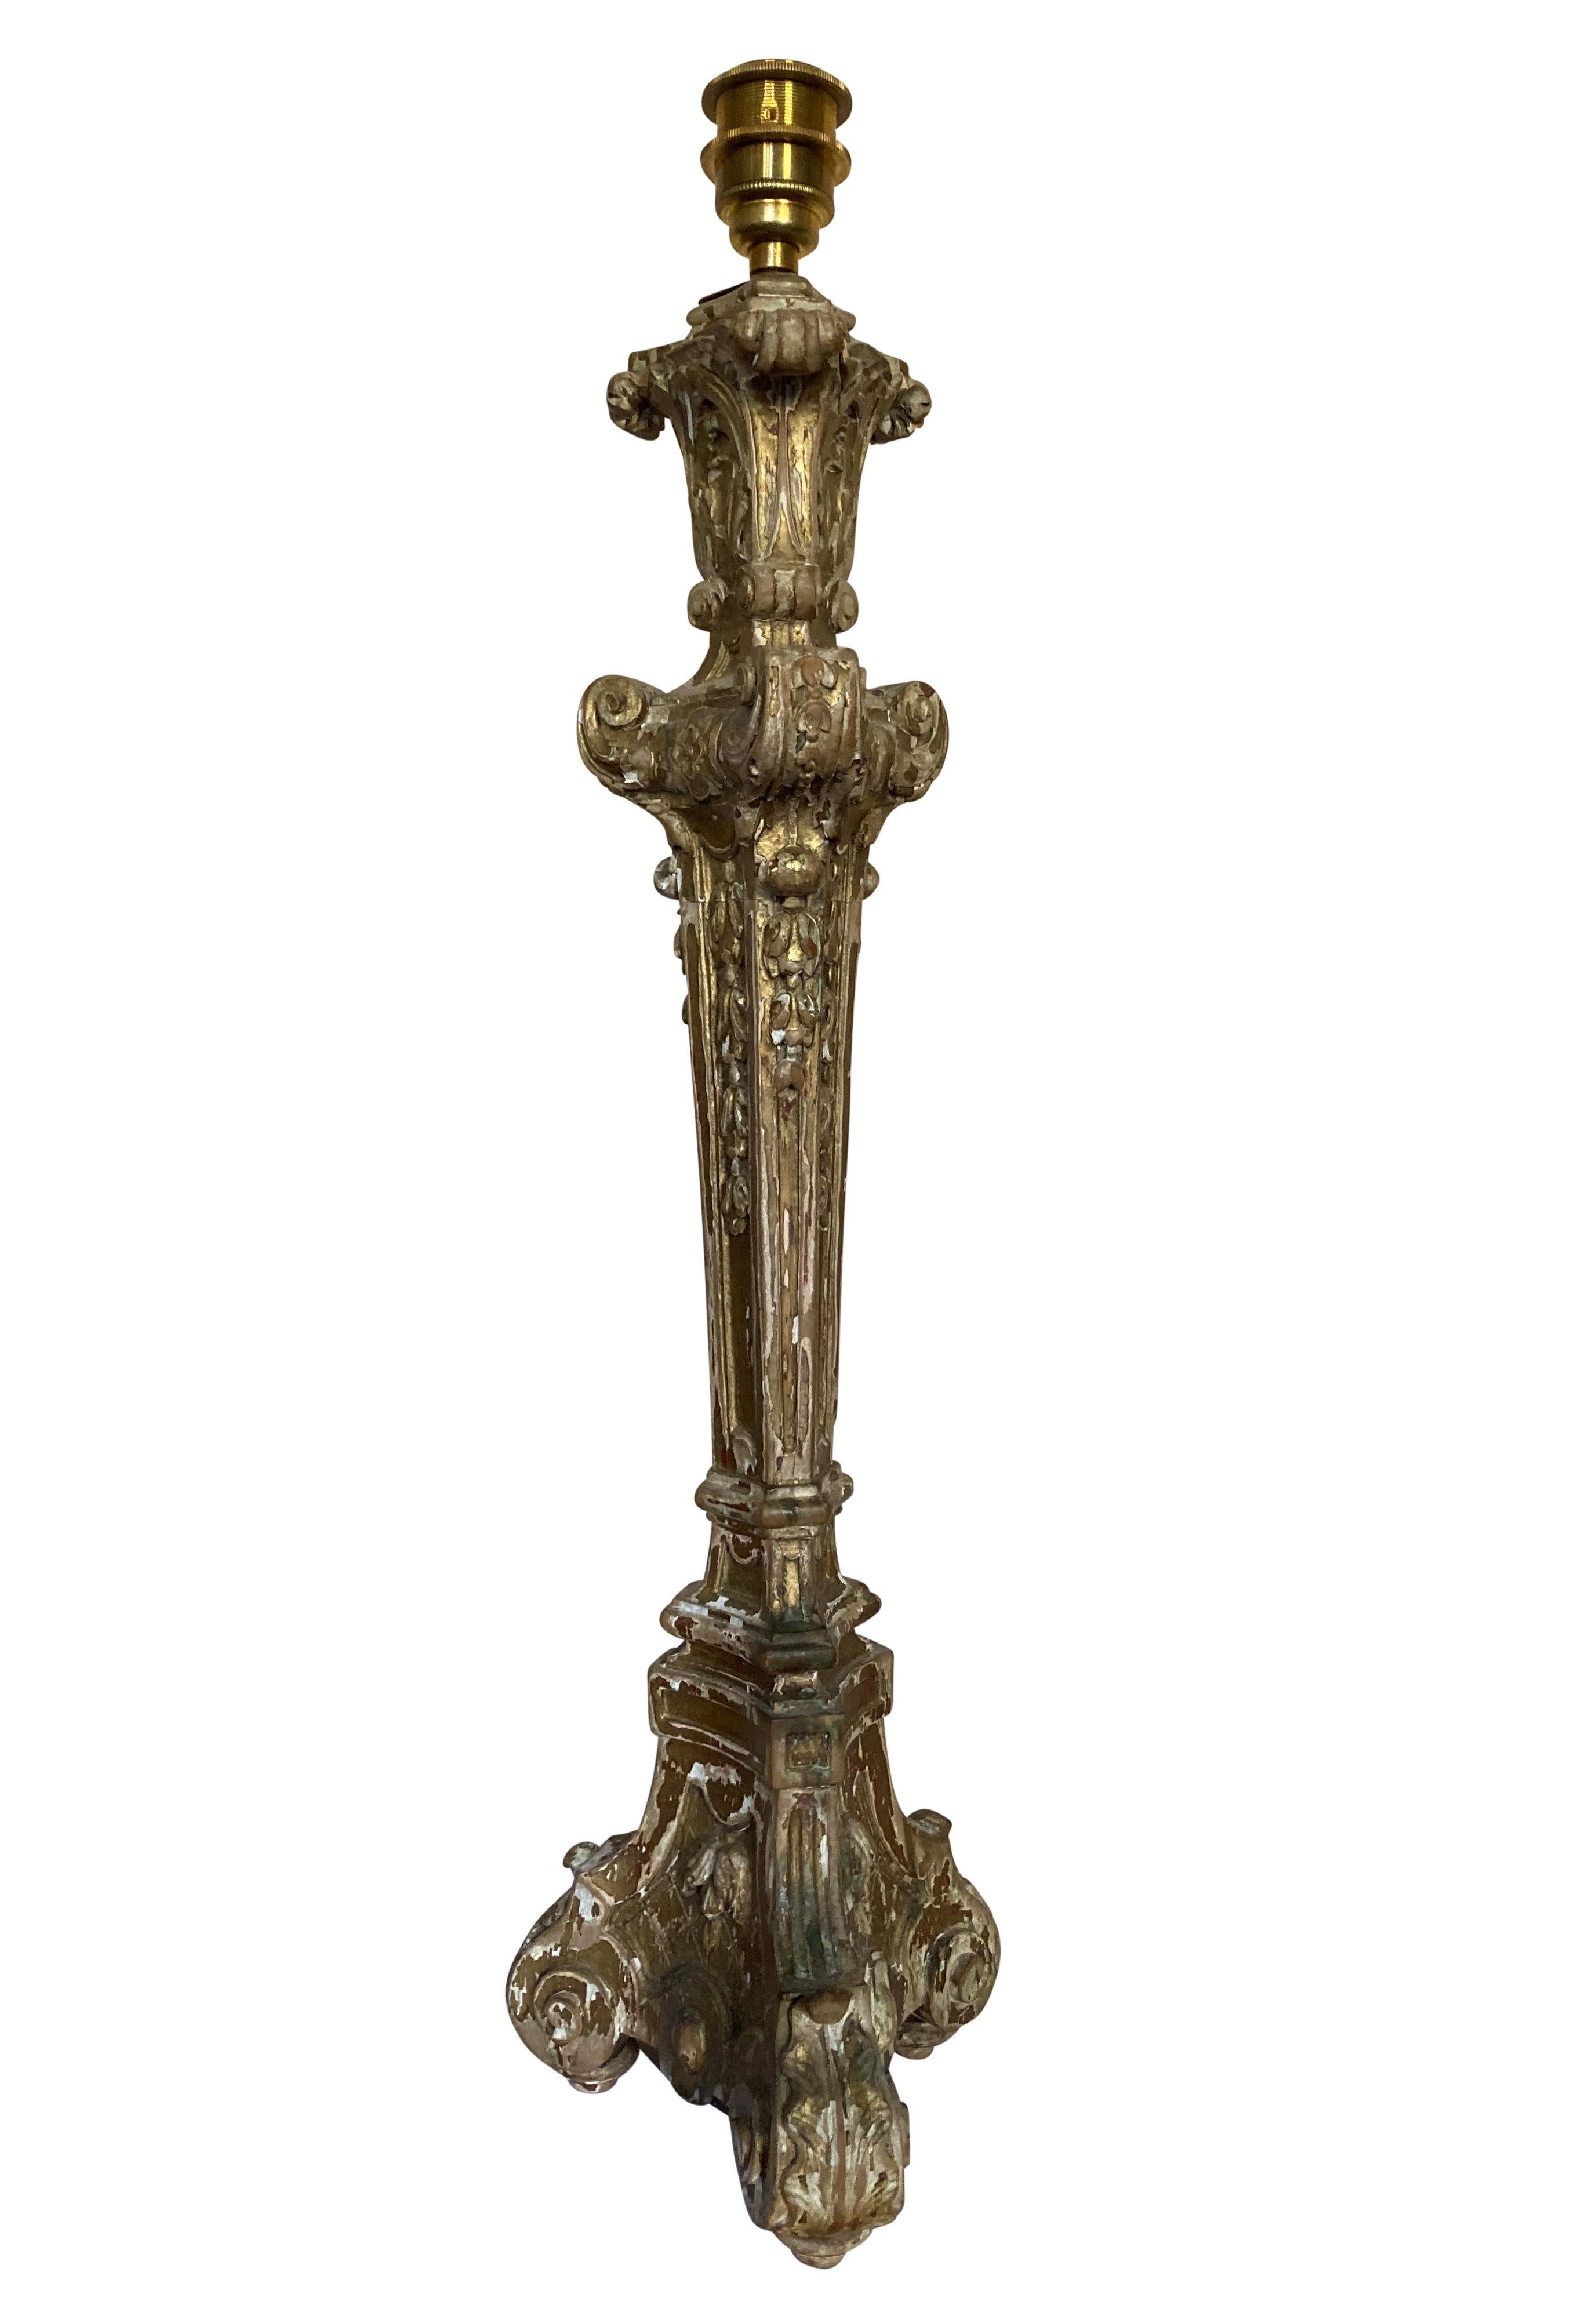 Une grande lampe baroque anglaise sculptée avec des traces de la dorure d'origine, dans un état de maison de campagne sèche. Câblé avec un cordon de soie or antique avec interrupteur.